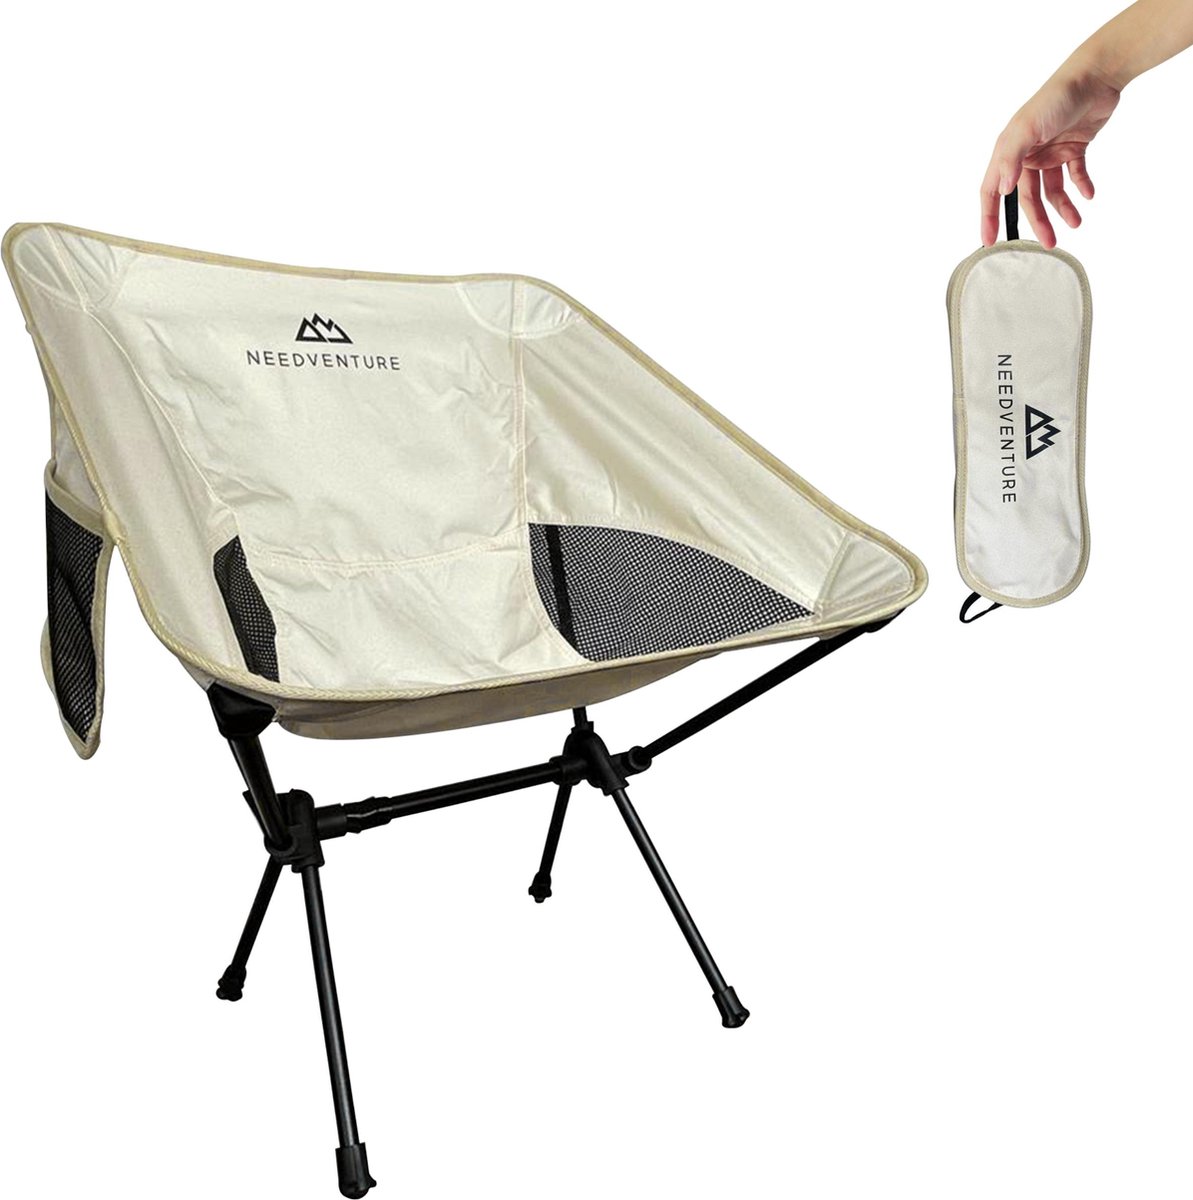 Needventure Campingstoel - Strandstoel - Visstoel - Vouwstoel - Opvouwbaar - Inklapbaar - Lichtgewicht - Beige Wit